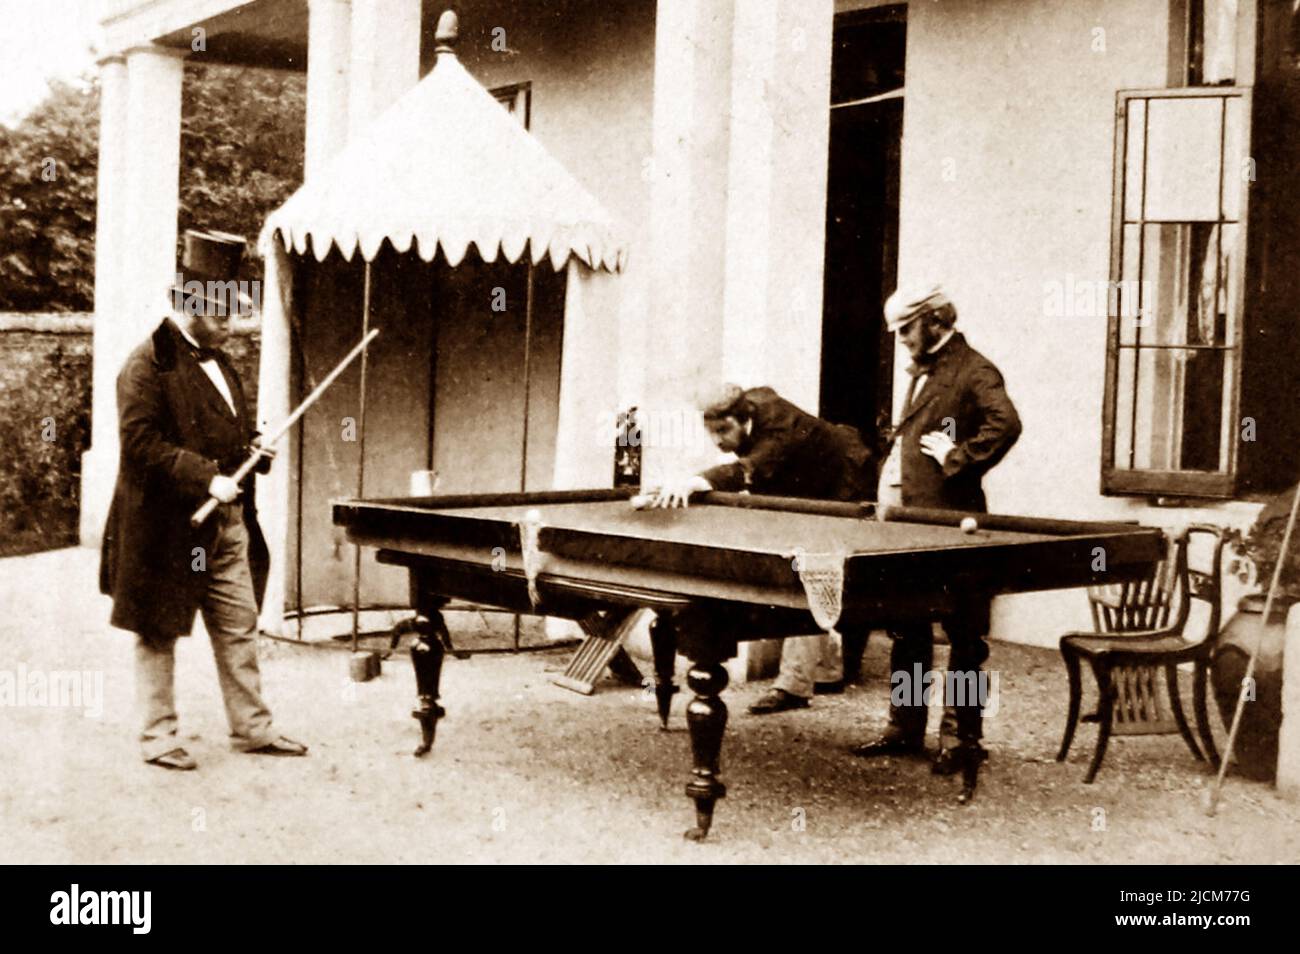 Signori che giocano a biliardo, probabilmente 1860/70s Foto Stock